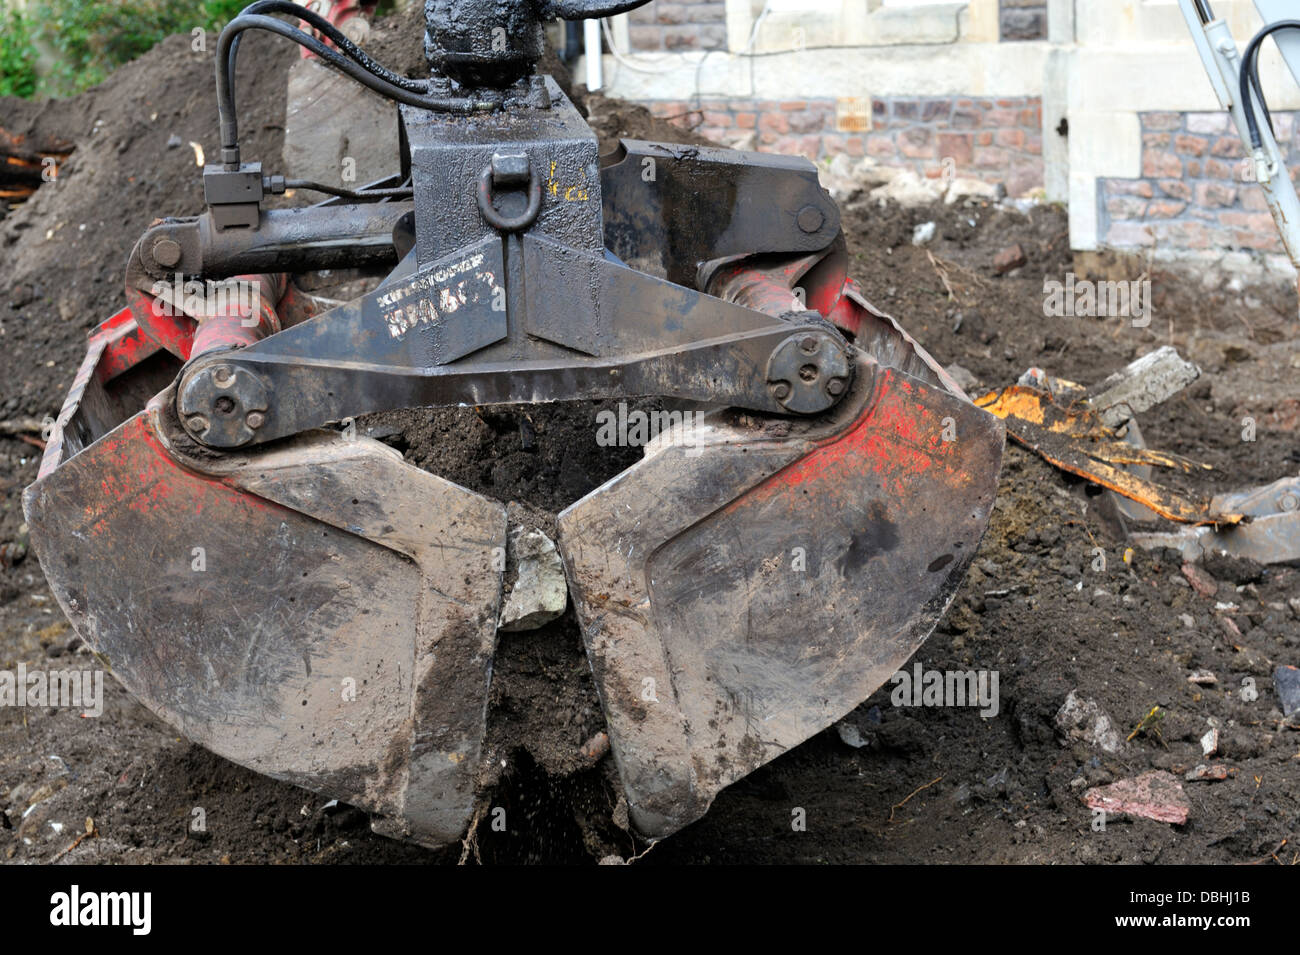 Clamshell grab cuchara se utiliza para remover la tierra y escombros Foto de stock